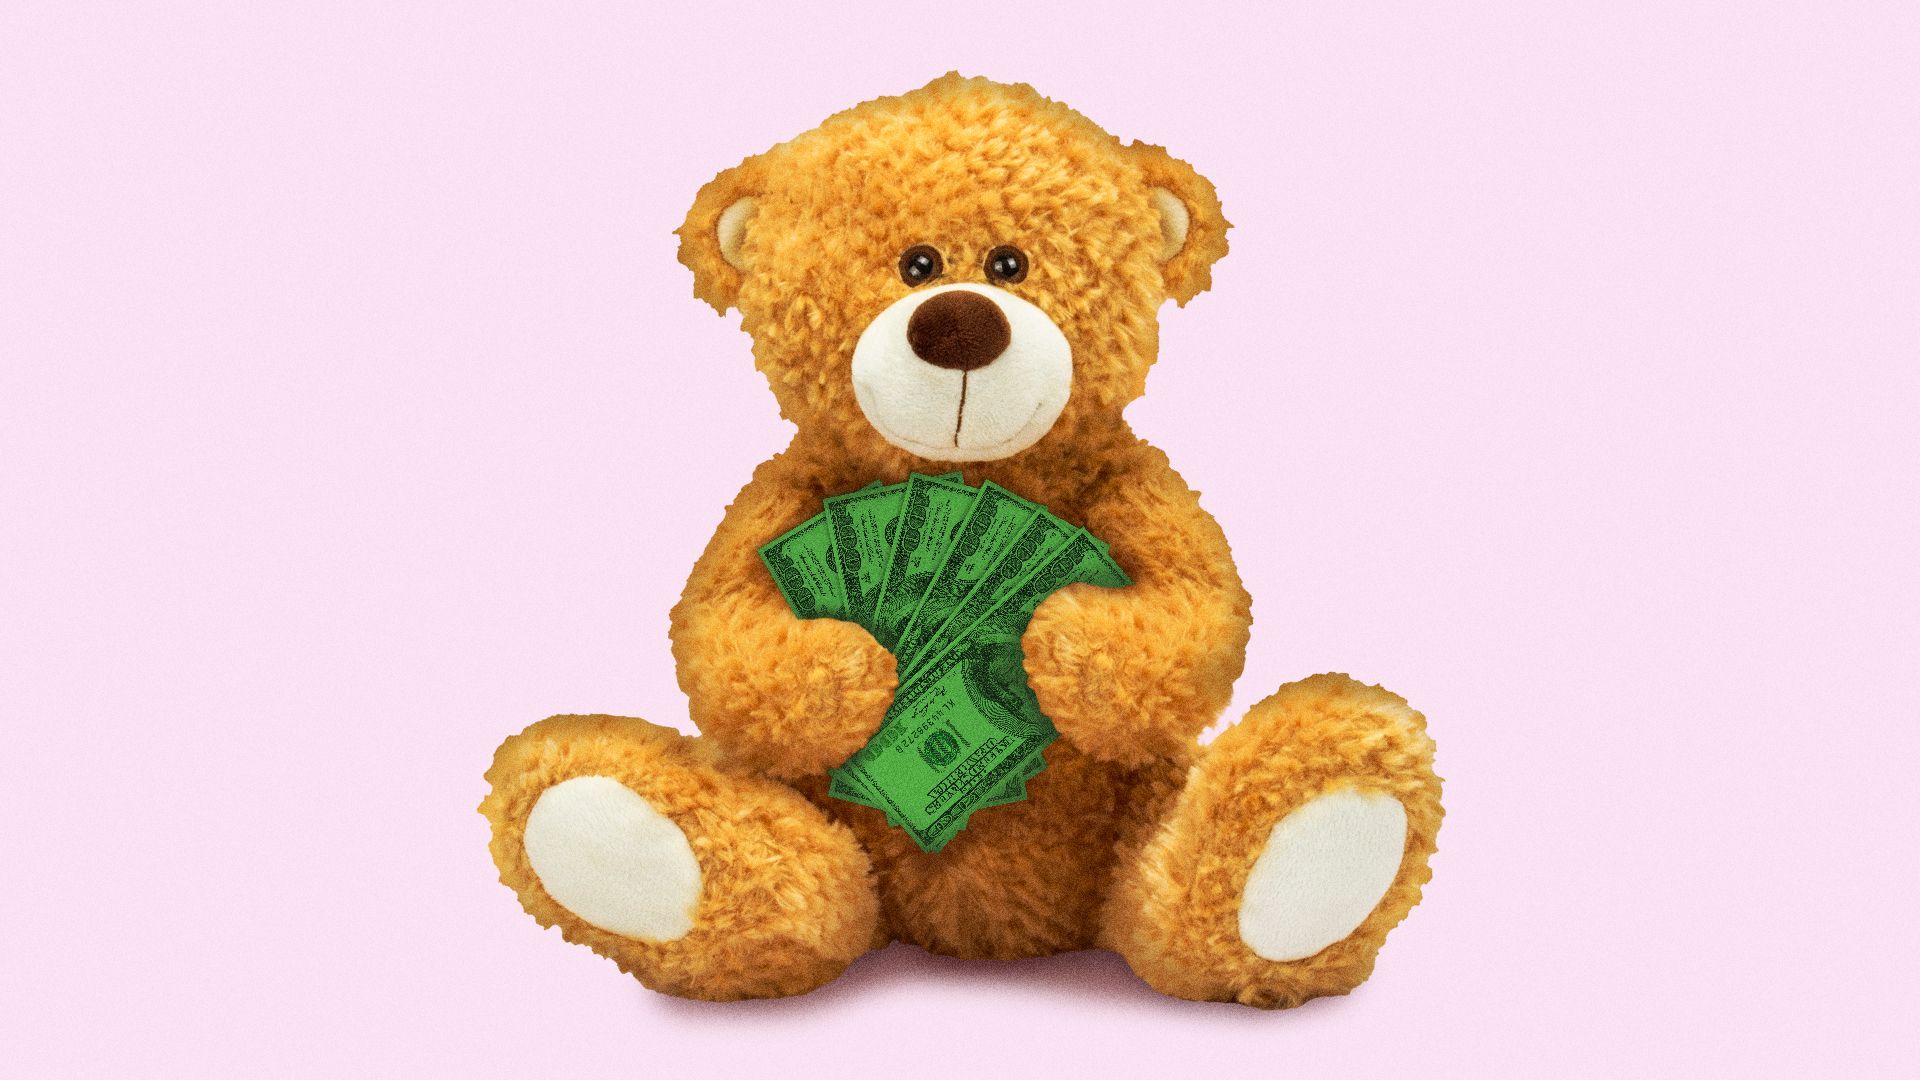 Illustration of a teddy bear holding a fan of hundred dollar bills.